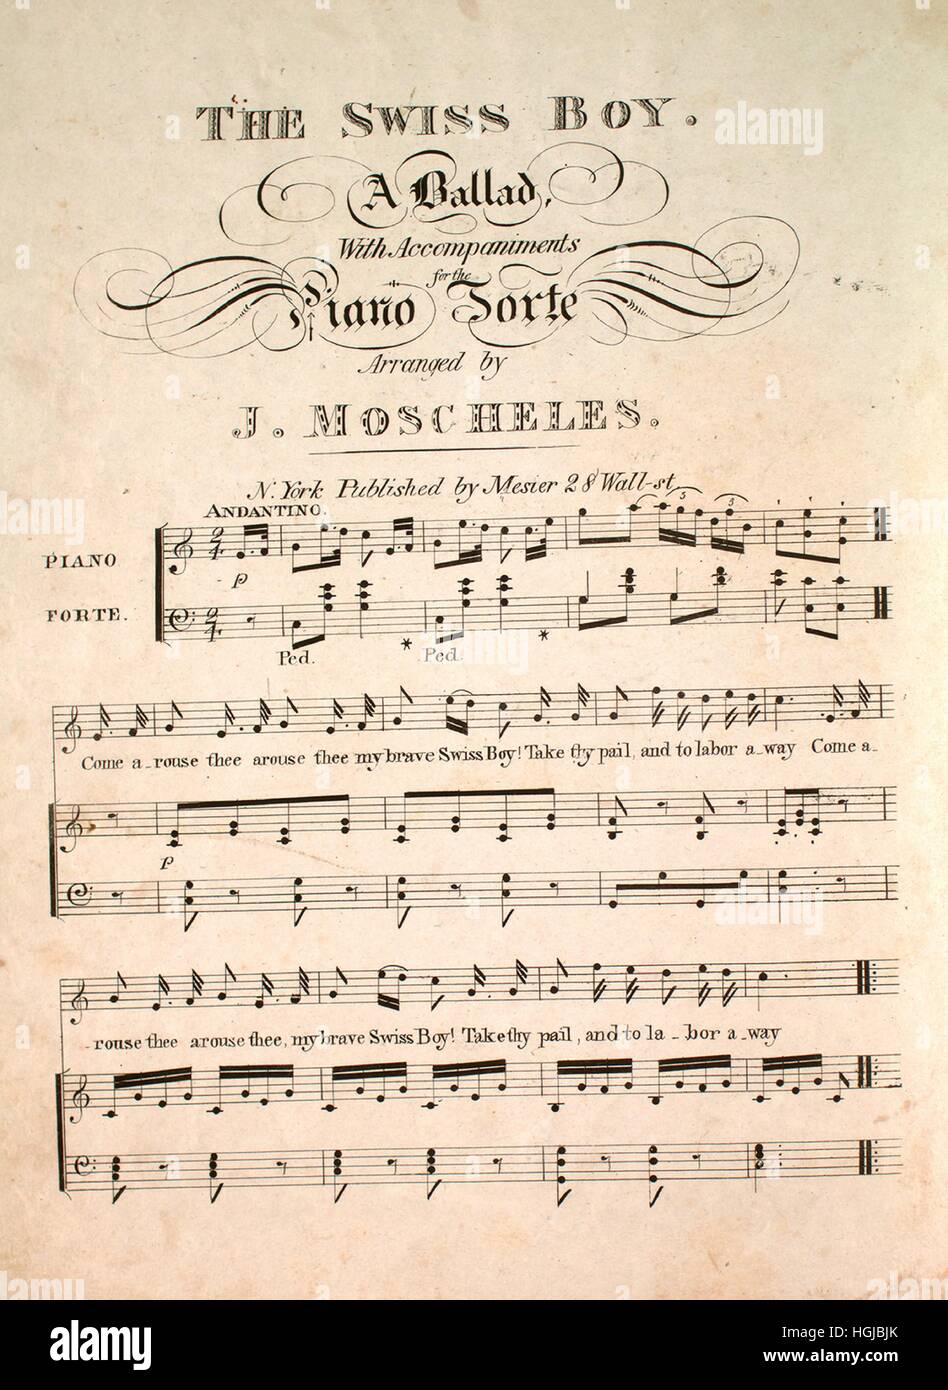 Imagen de cubierta de partituras de la canción "El muchacho suizo una  balada", con notas de autoría original leyendo 'Con acompañamientos de  Piano Forte organizado por J Moscheles', de 1900. El editor